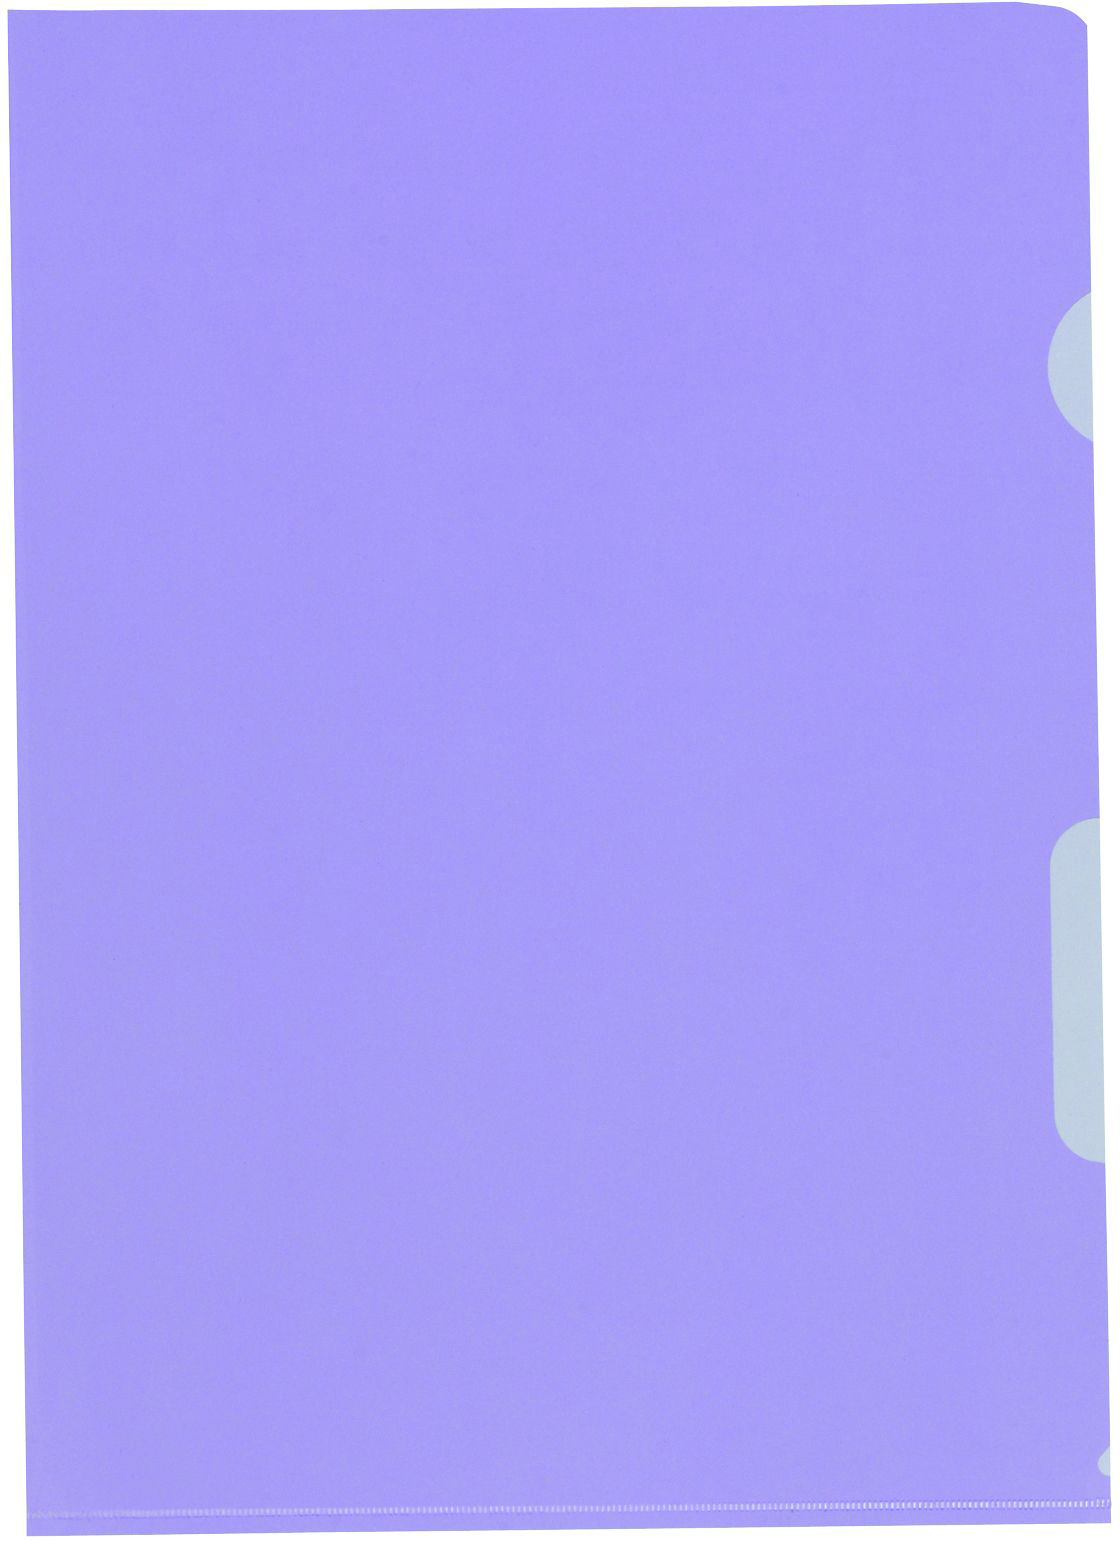 BÜROLINE Sichtmappen A4 620078 violett 100 Stück